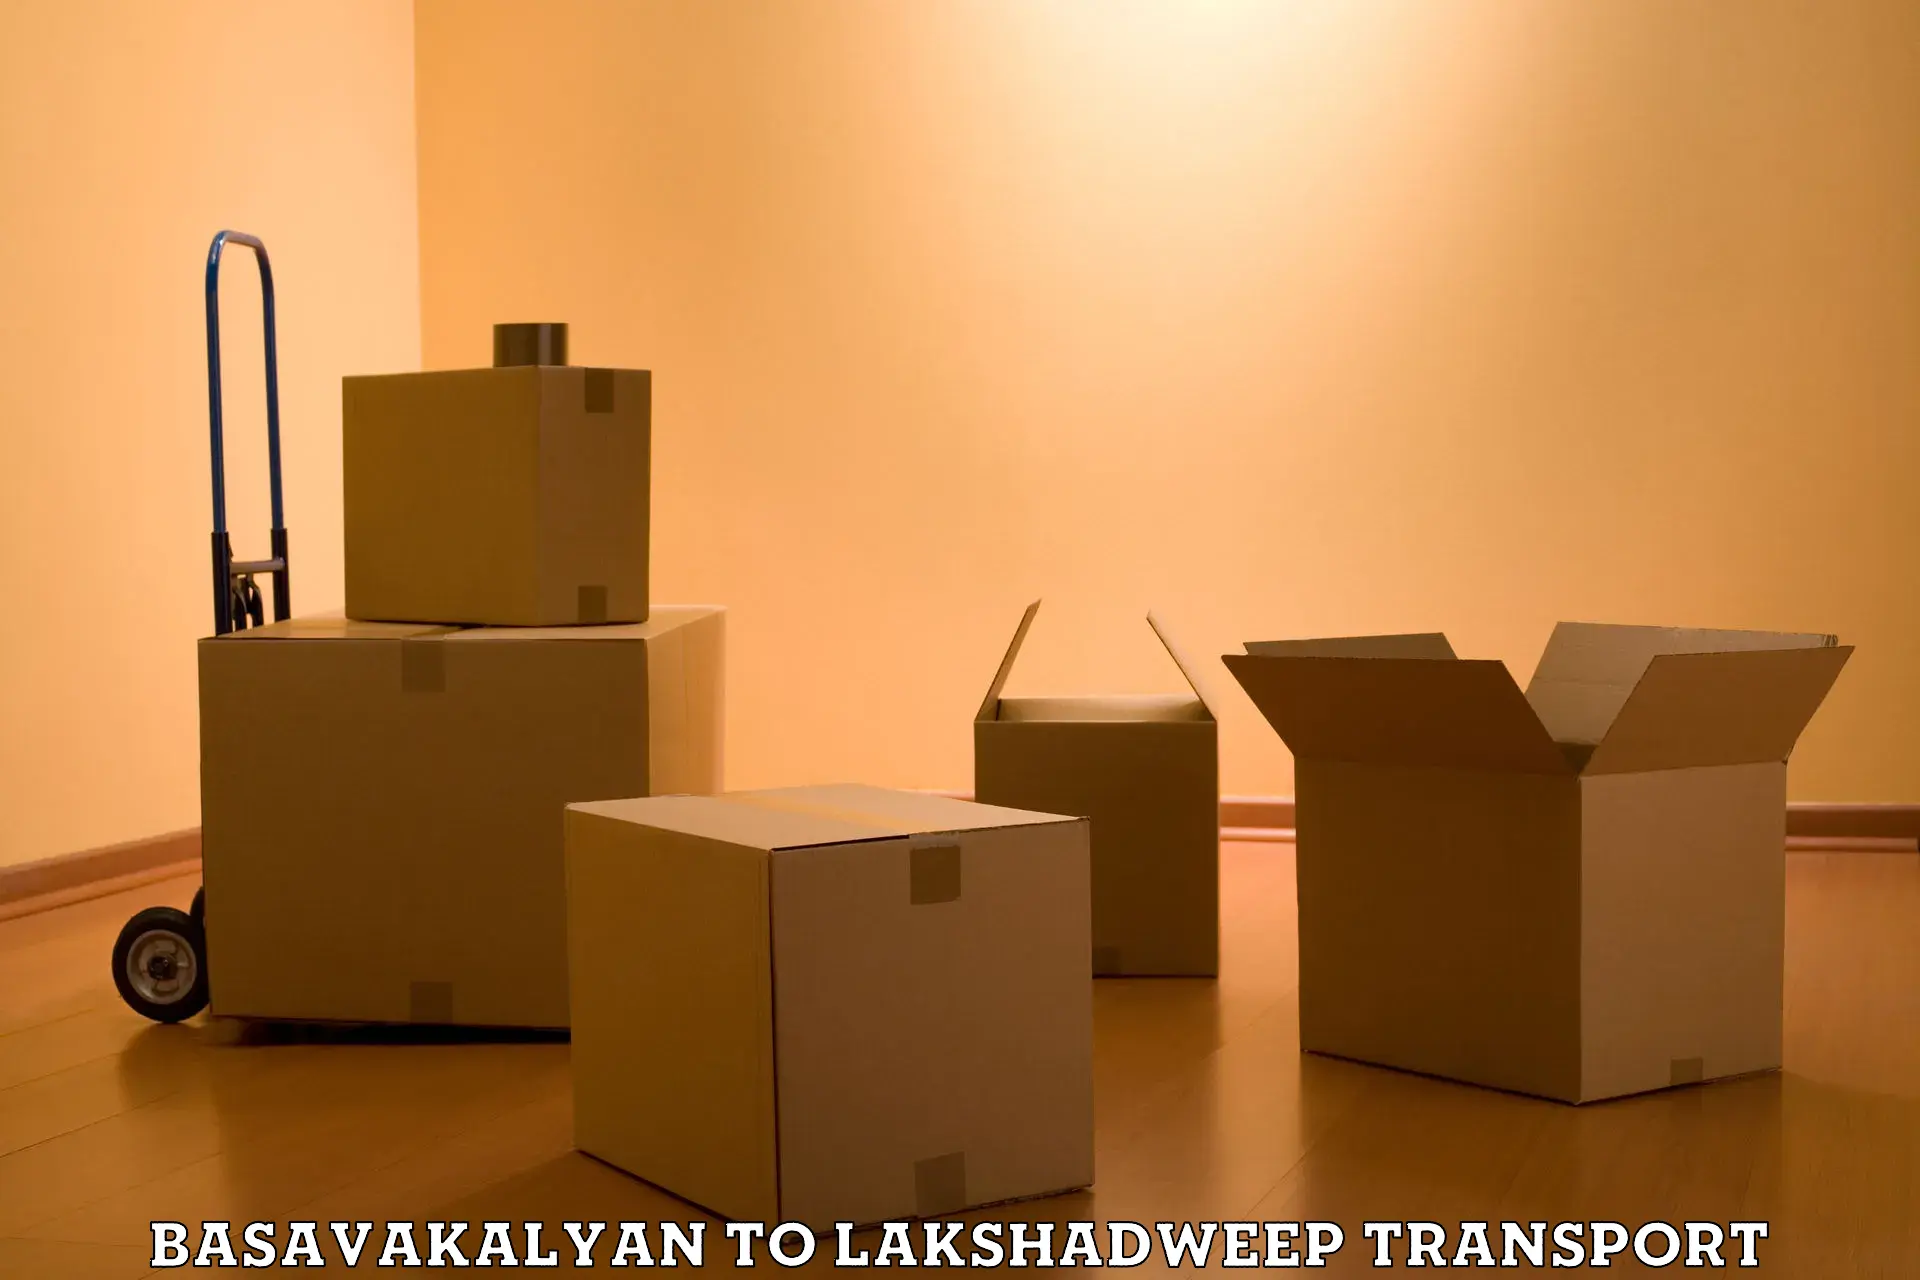 Container transportation services Basavakalyan to Lakshadweep